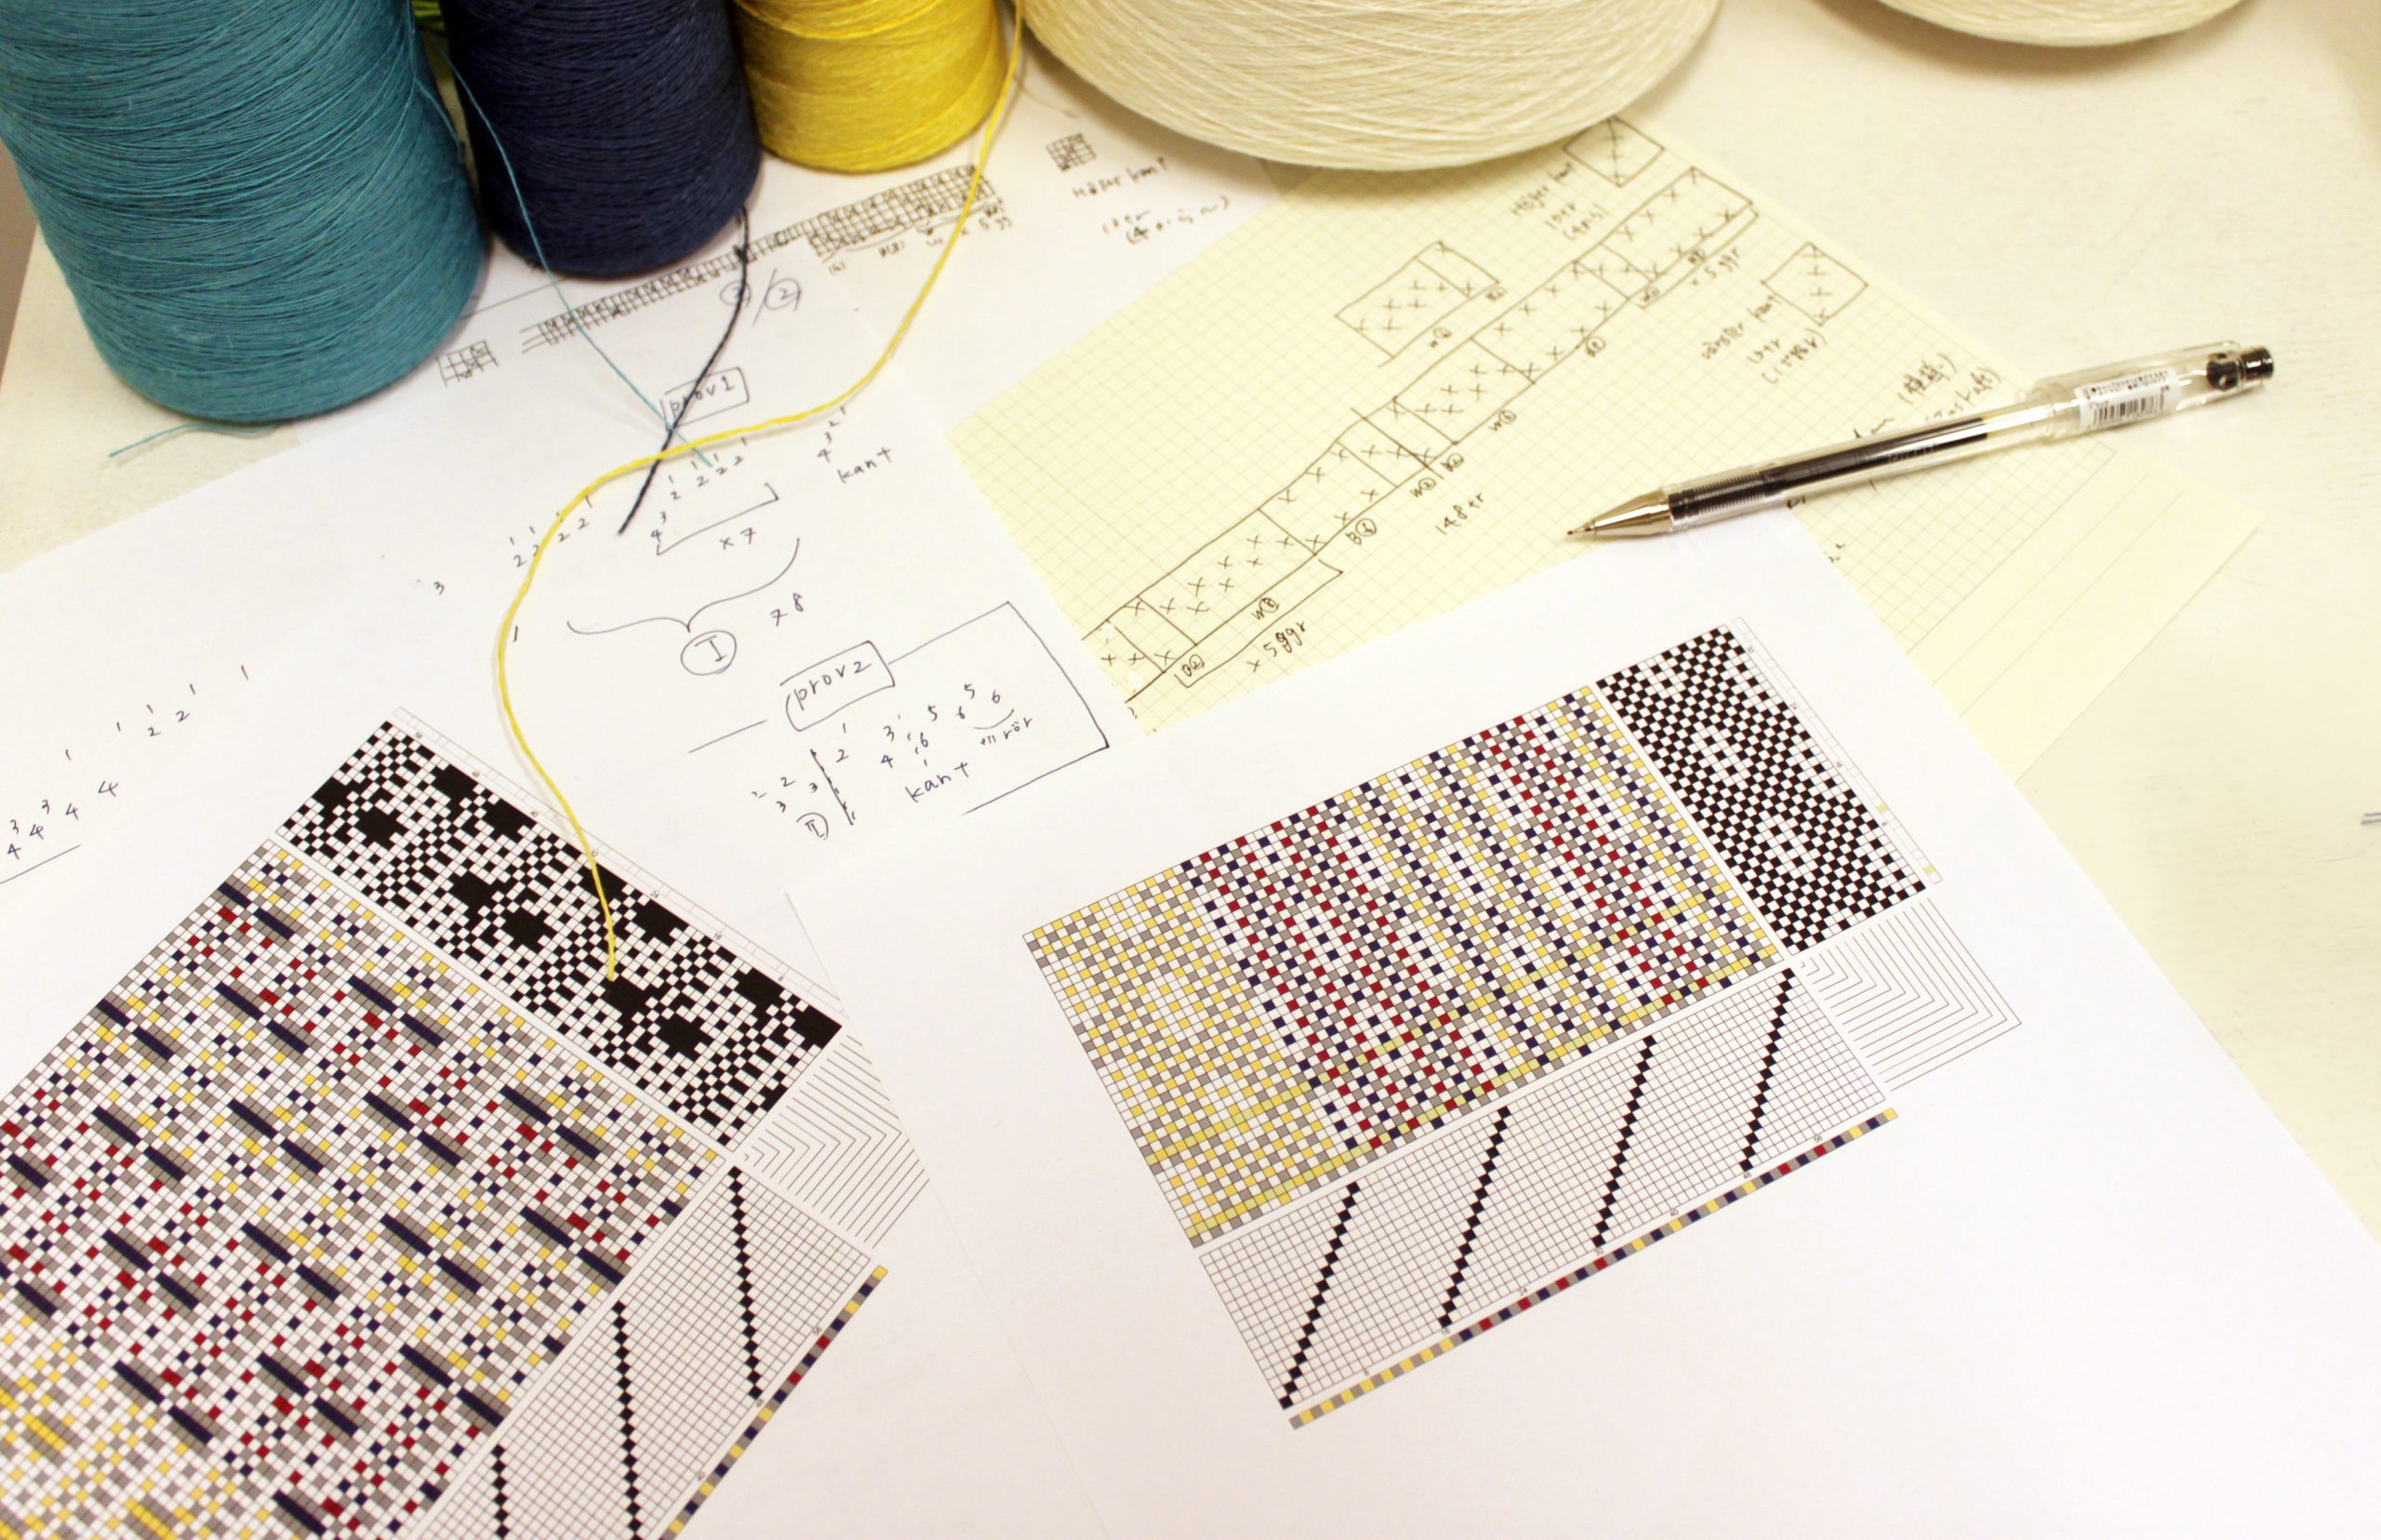 糸の交わり方が書かれた織物の設計図を基に、風合いを考えます。